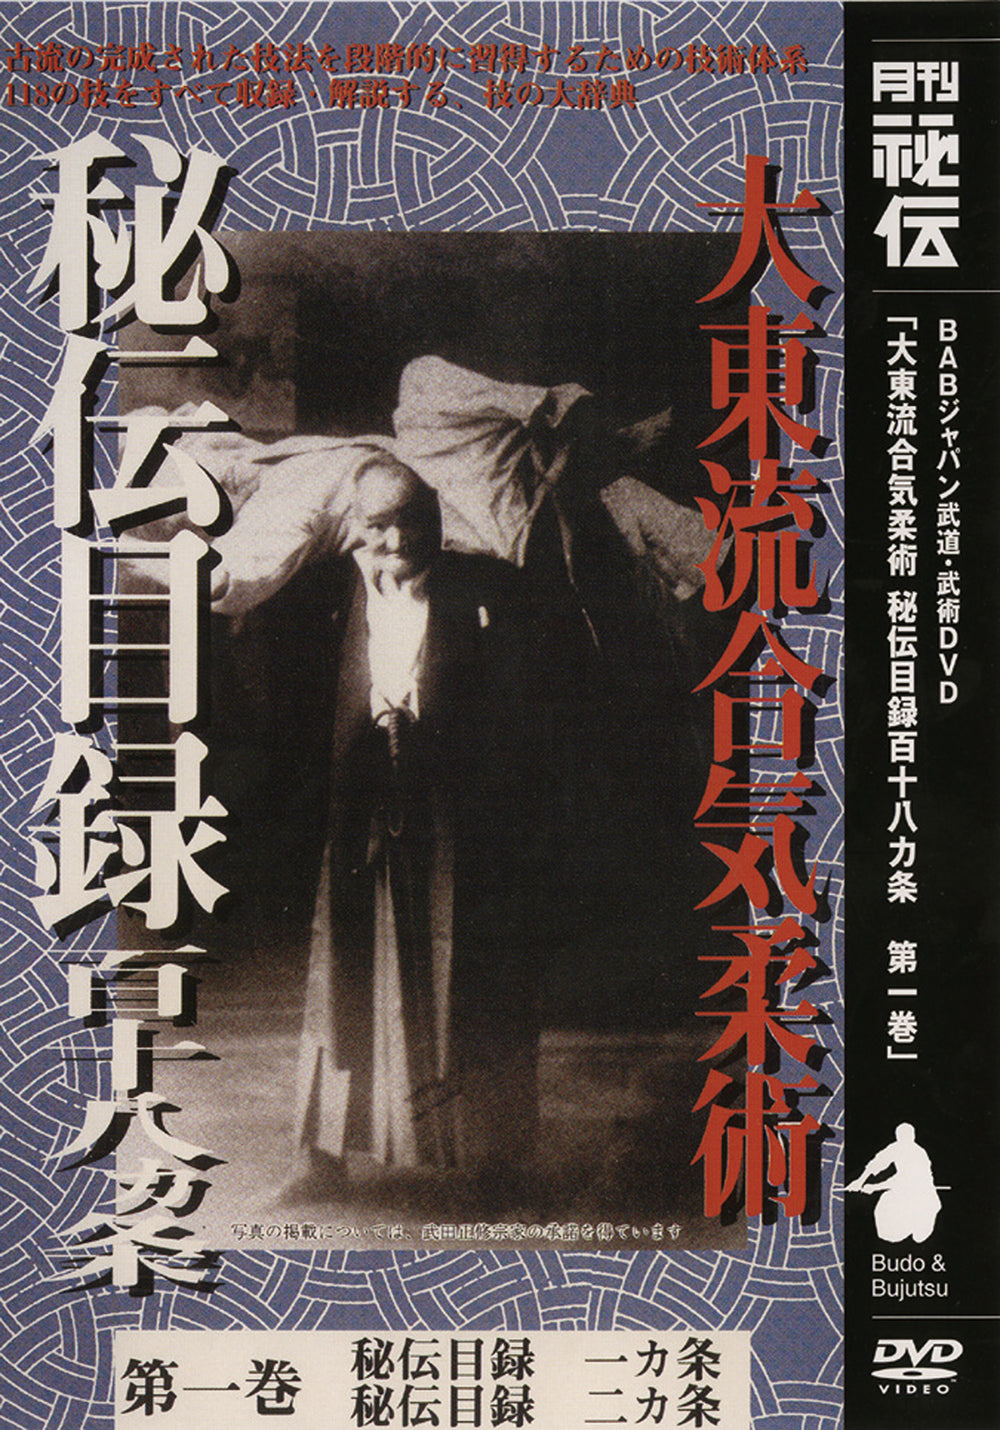 Daito Ryu Aikijujutsu: Hiden Mokuroku DVD Vol 1